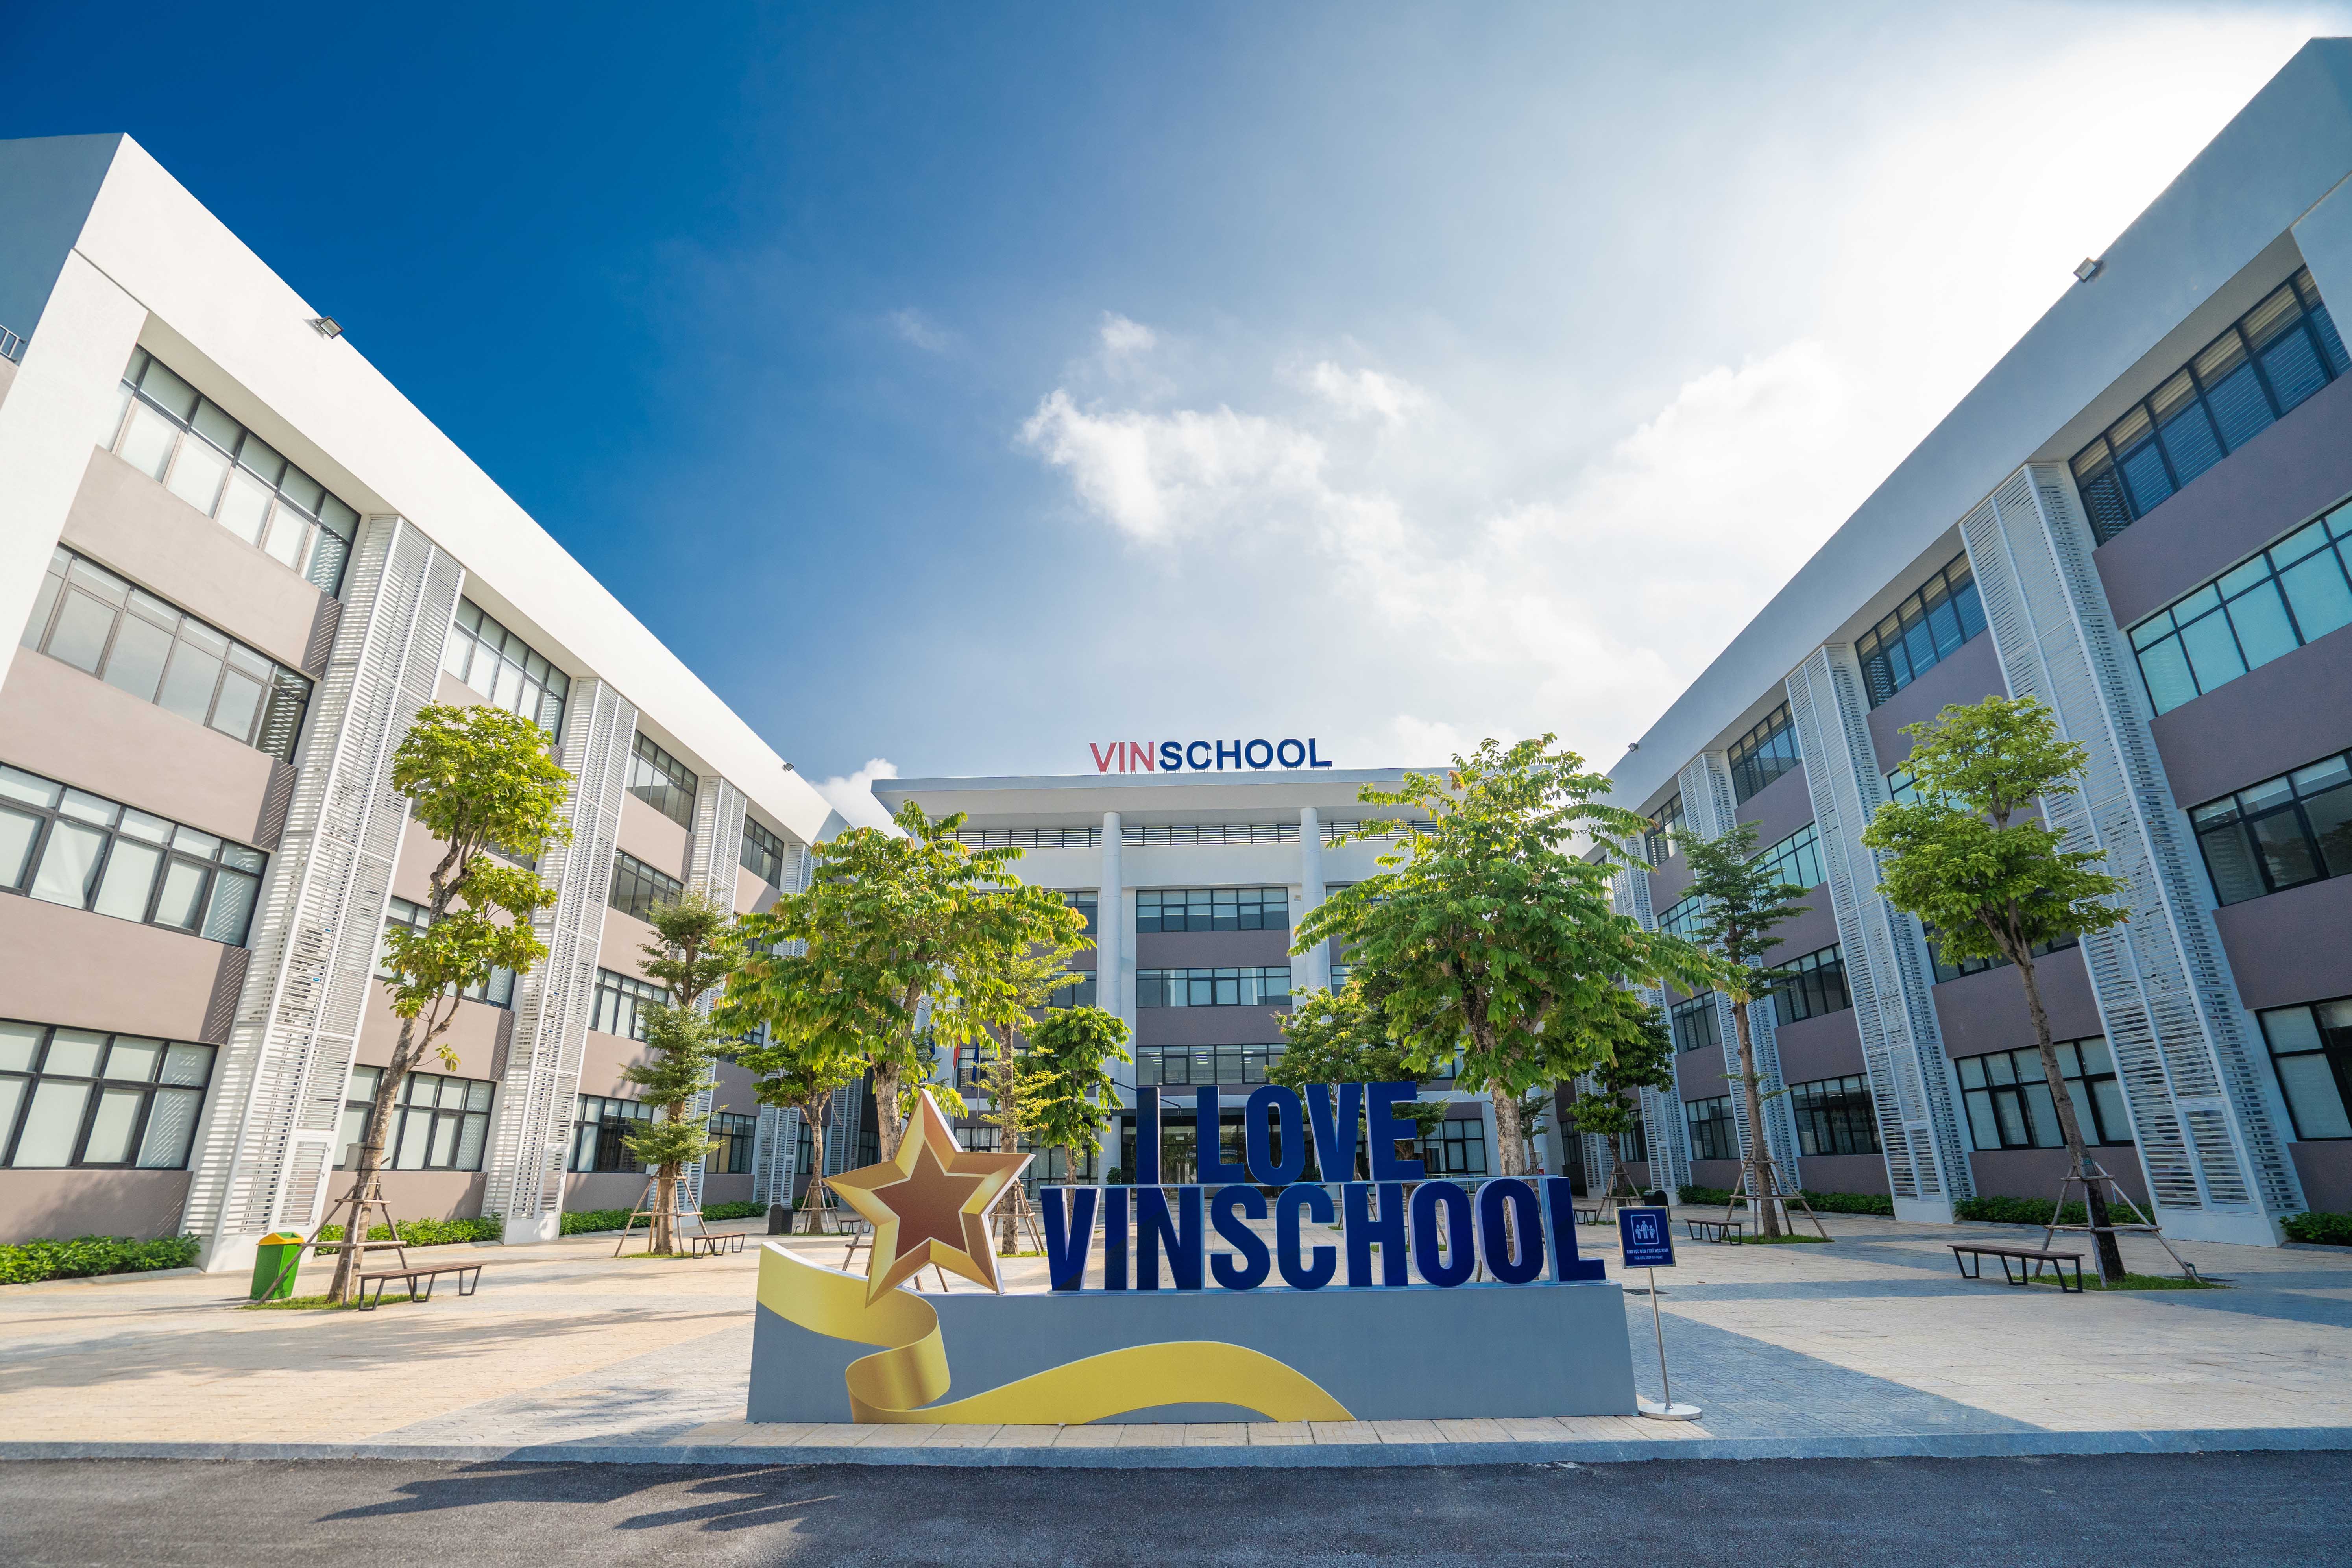 Vinschool hợp tác với Google và Samsung nâng cao chất lượng dạy  học   Tuổi Trẻ Online